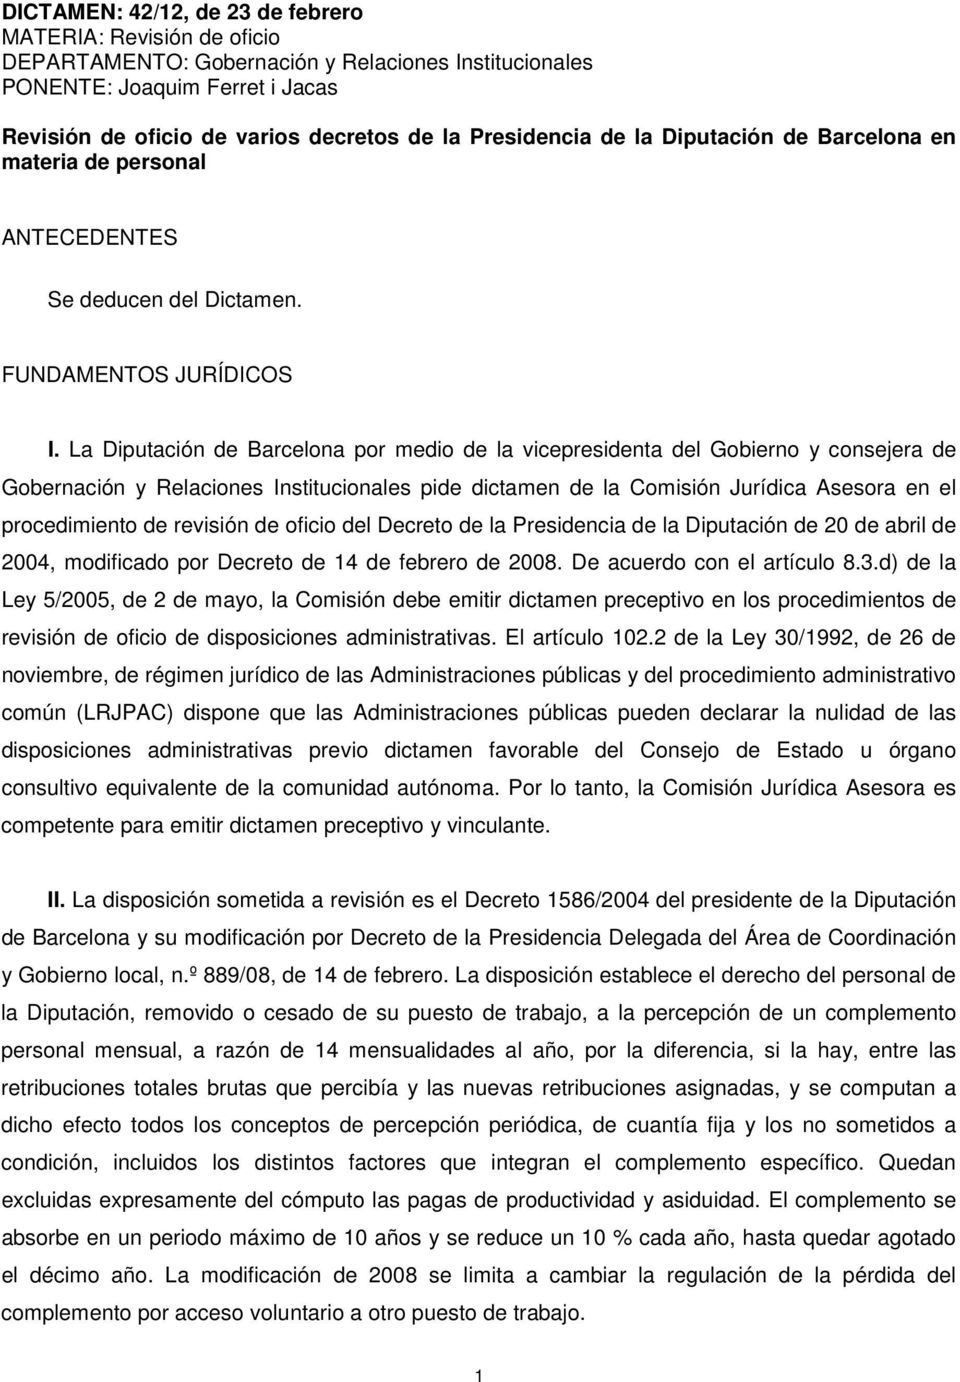 La Diputación de Barcelona por medio de la vicepresidenta del Gobierno y consejera de Gobernación y Relaciones Institucionales pide dictamen de la Comisión Jurídica Asesora en el procedimiento de